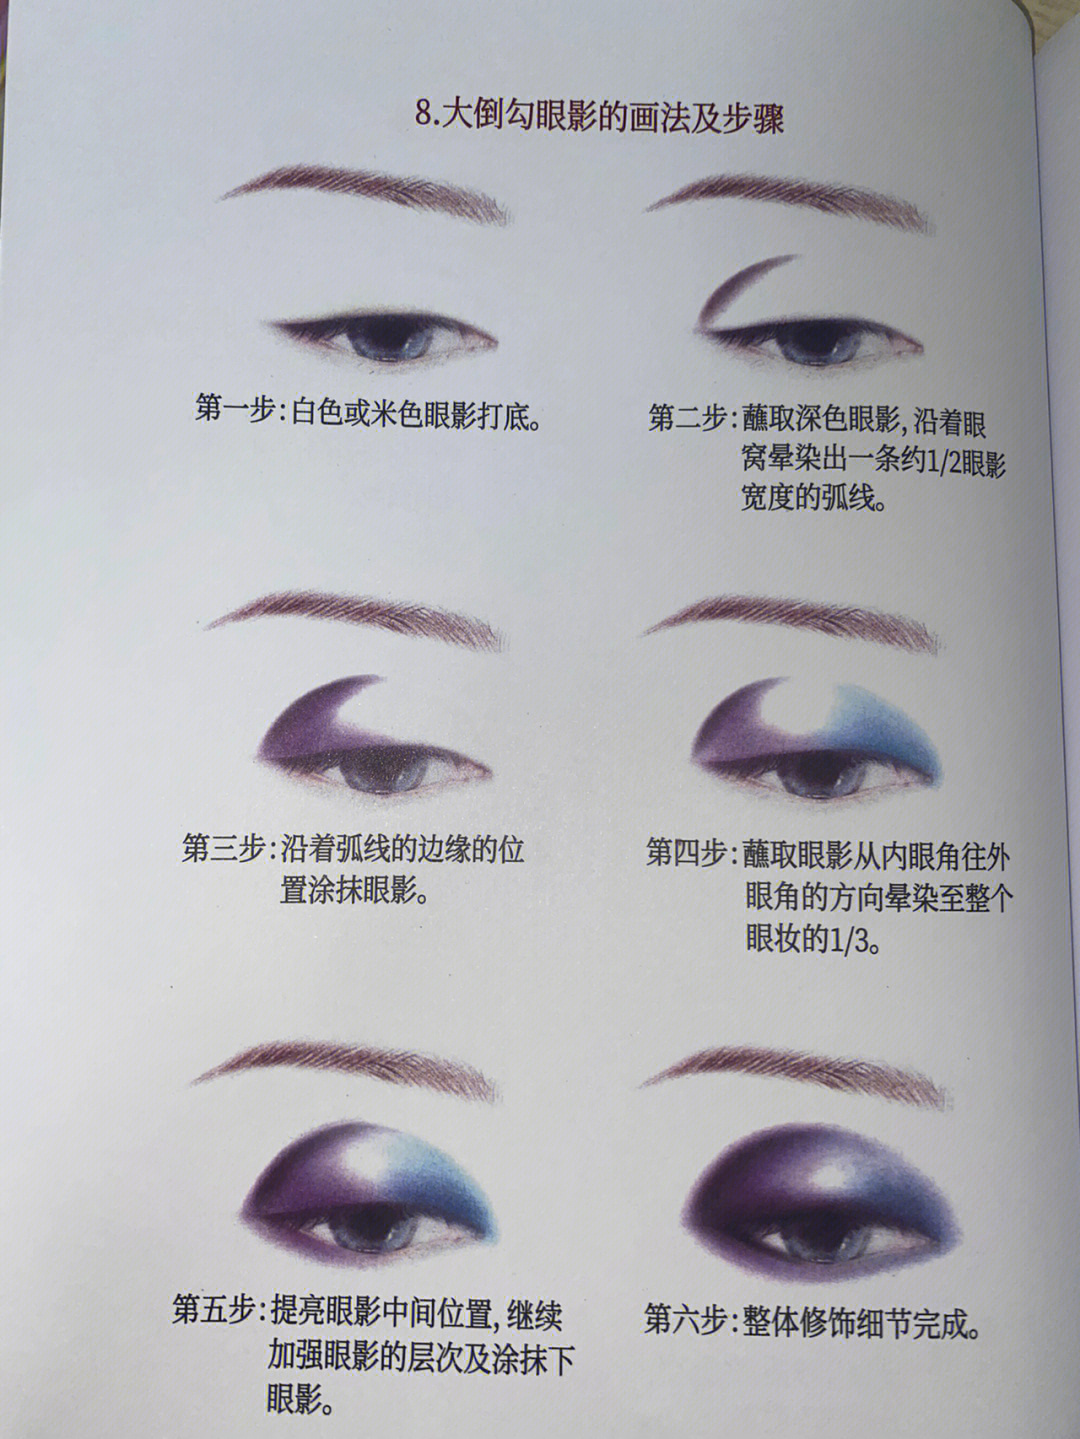 化妆师笔记第八章眼影技法2接上篇